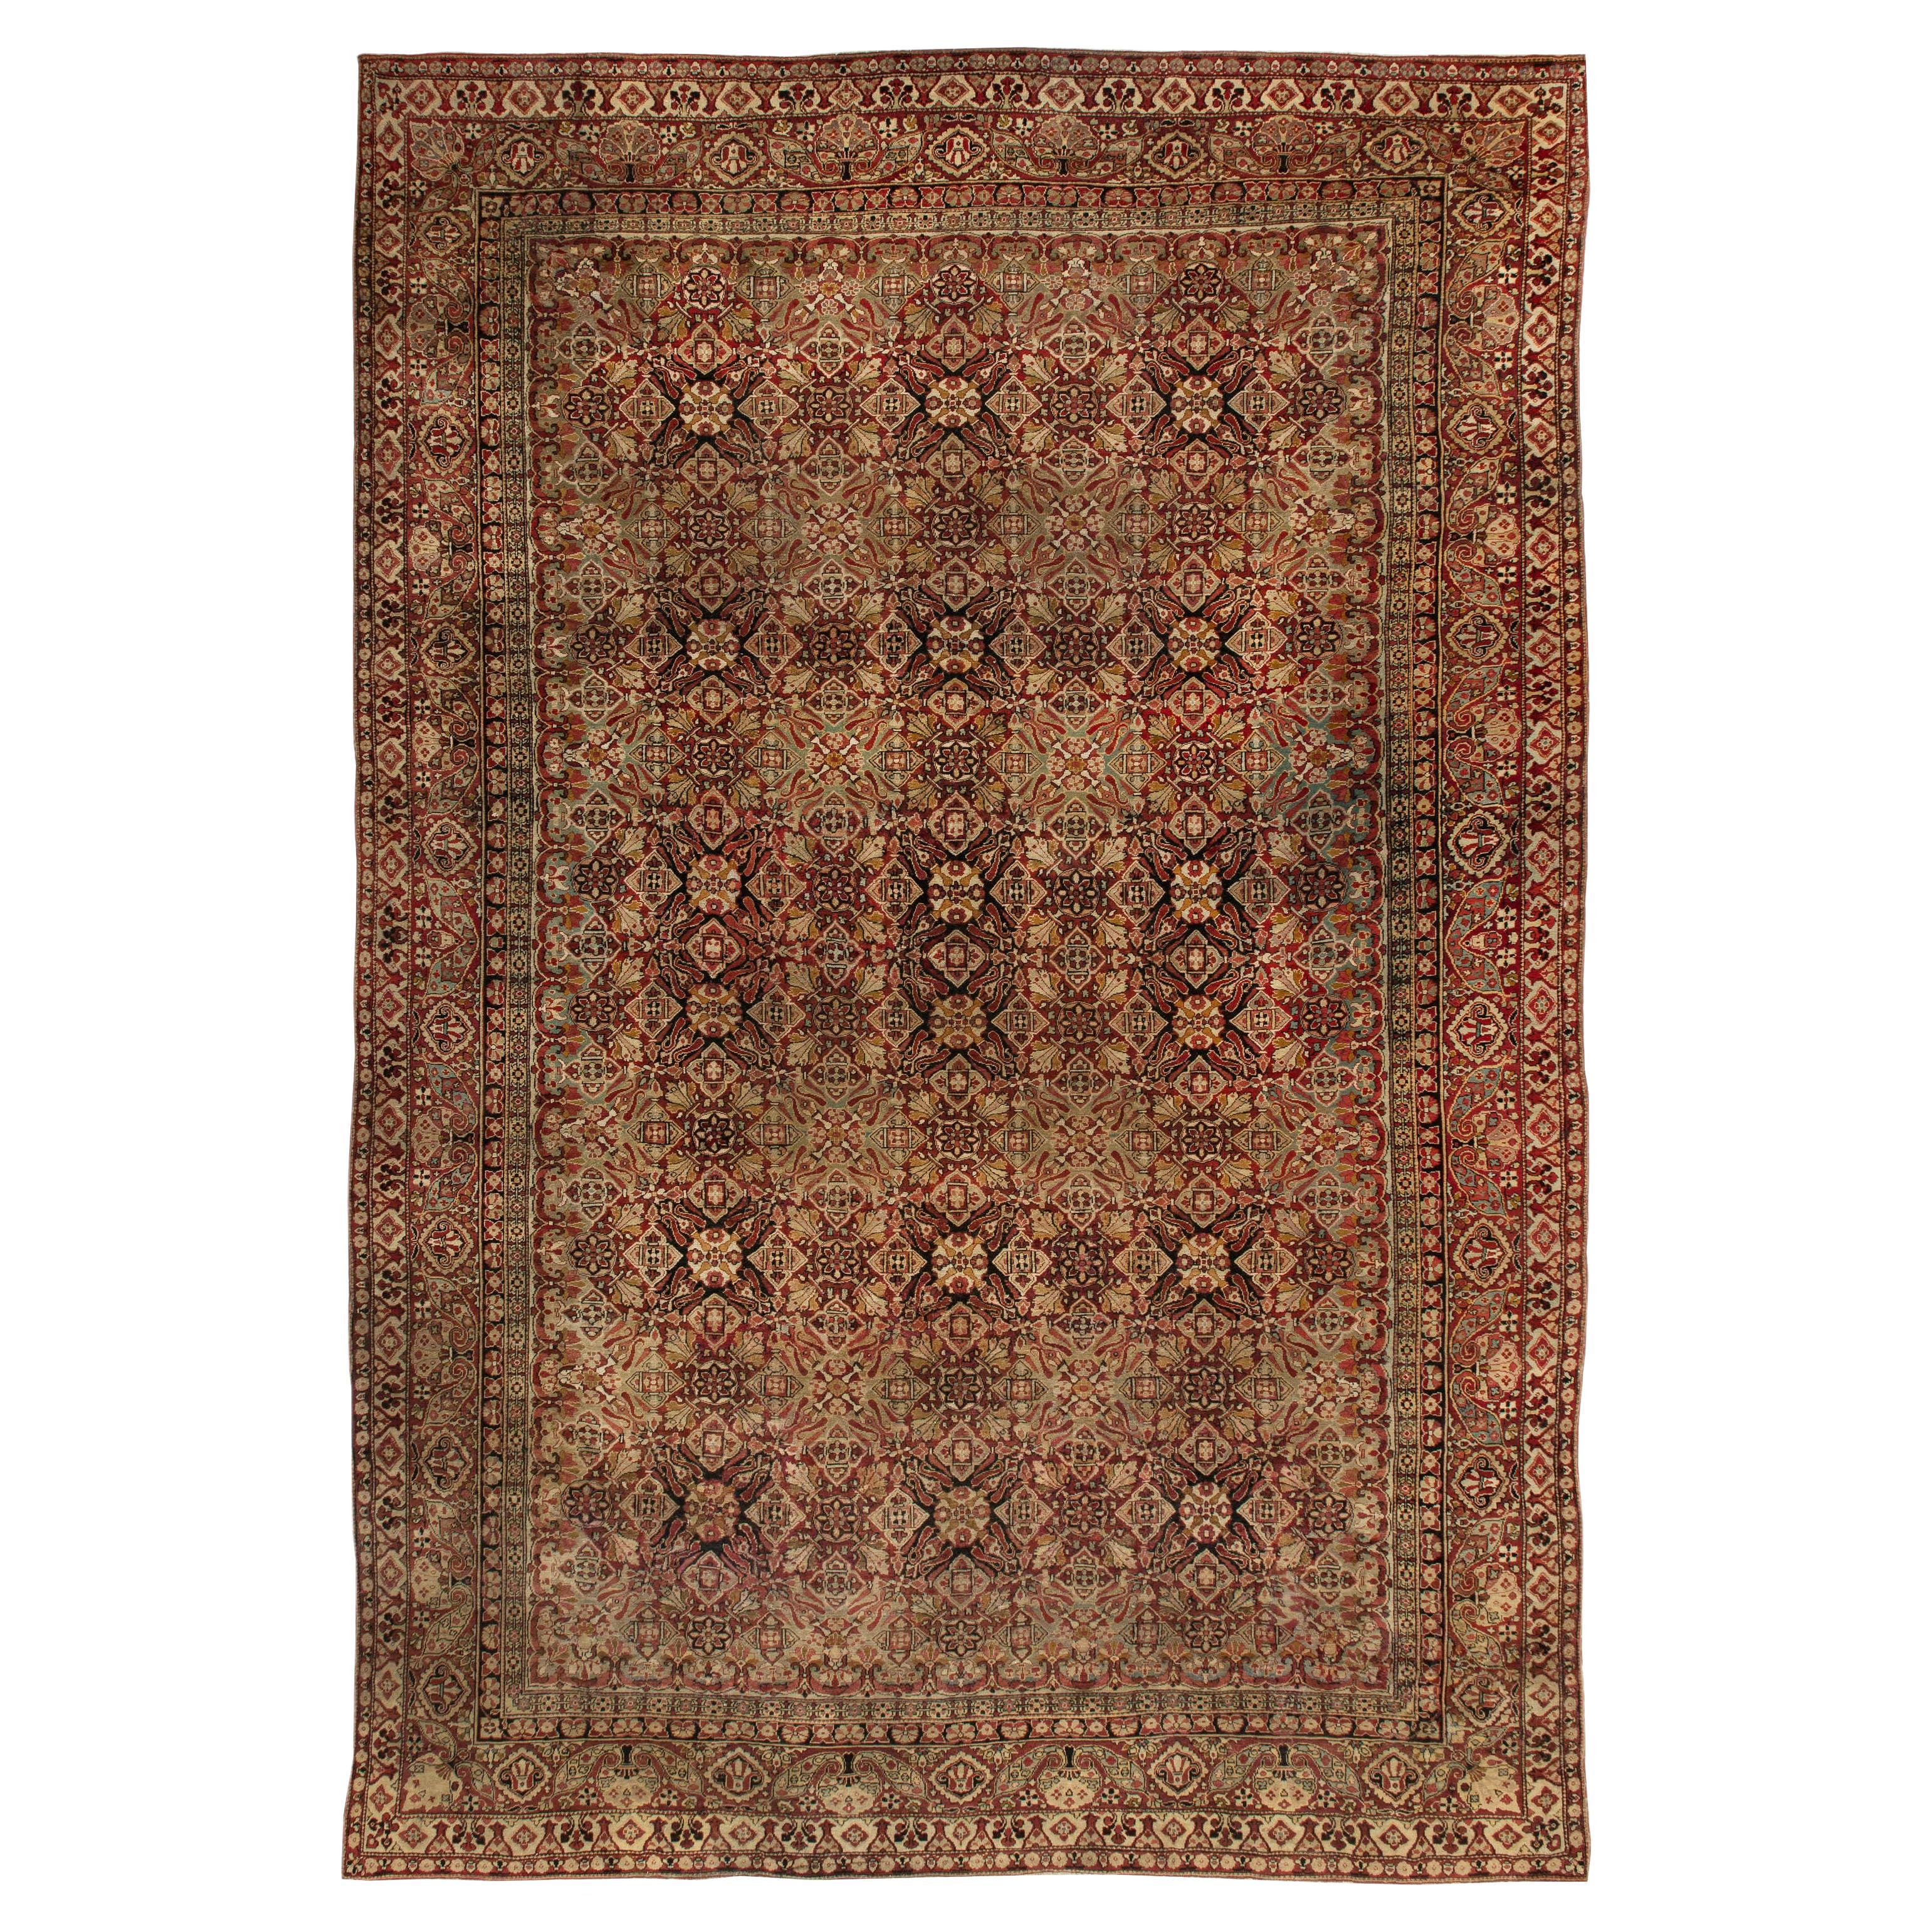 19th Century Indian Amritsar Botanic Wool Carpet